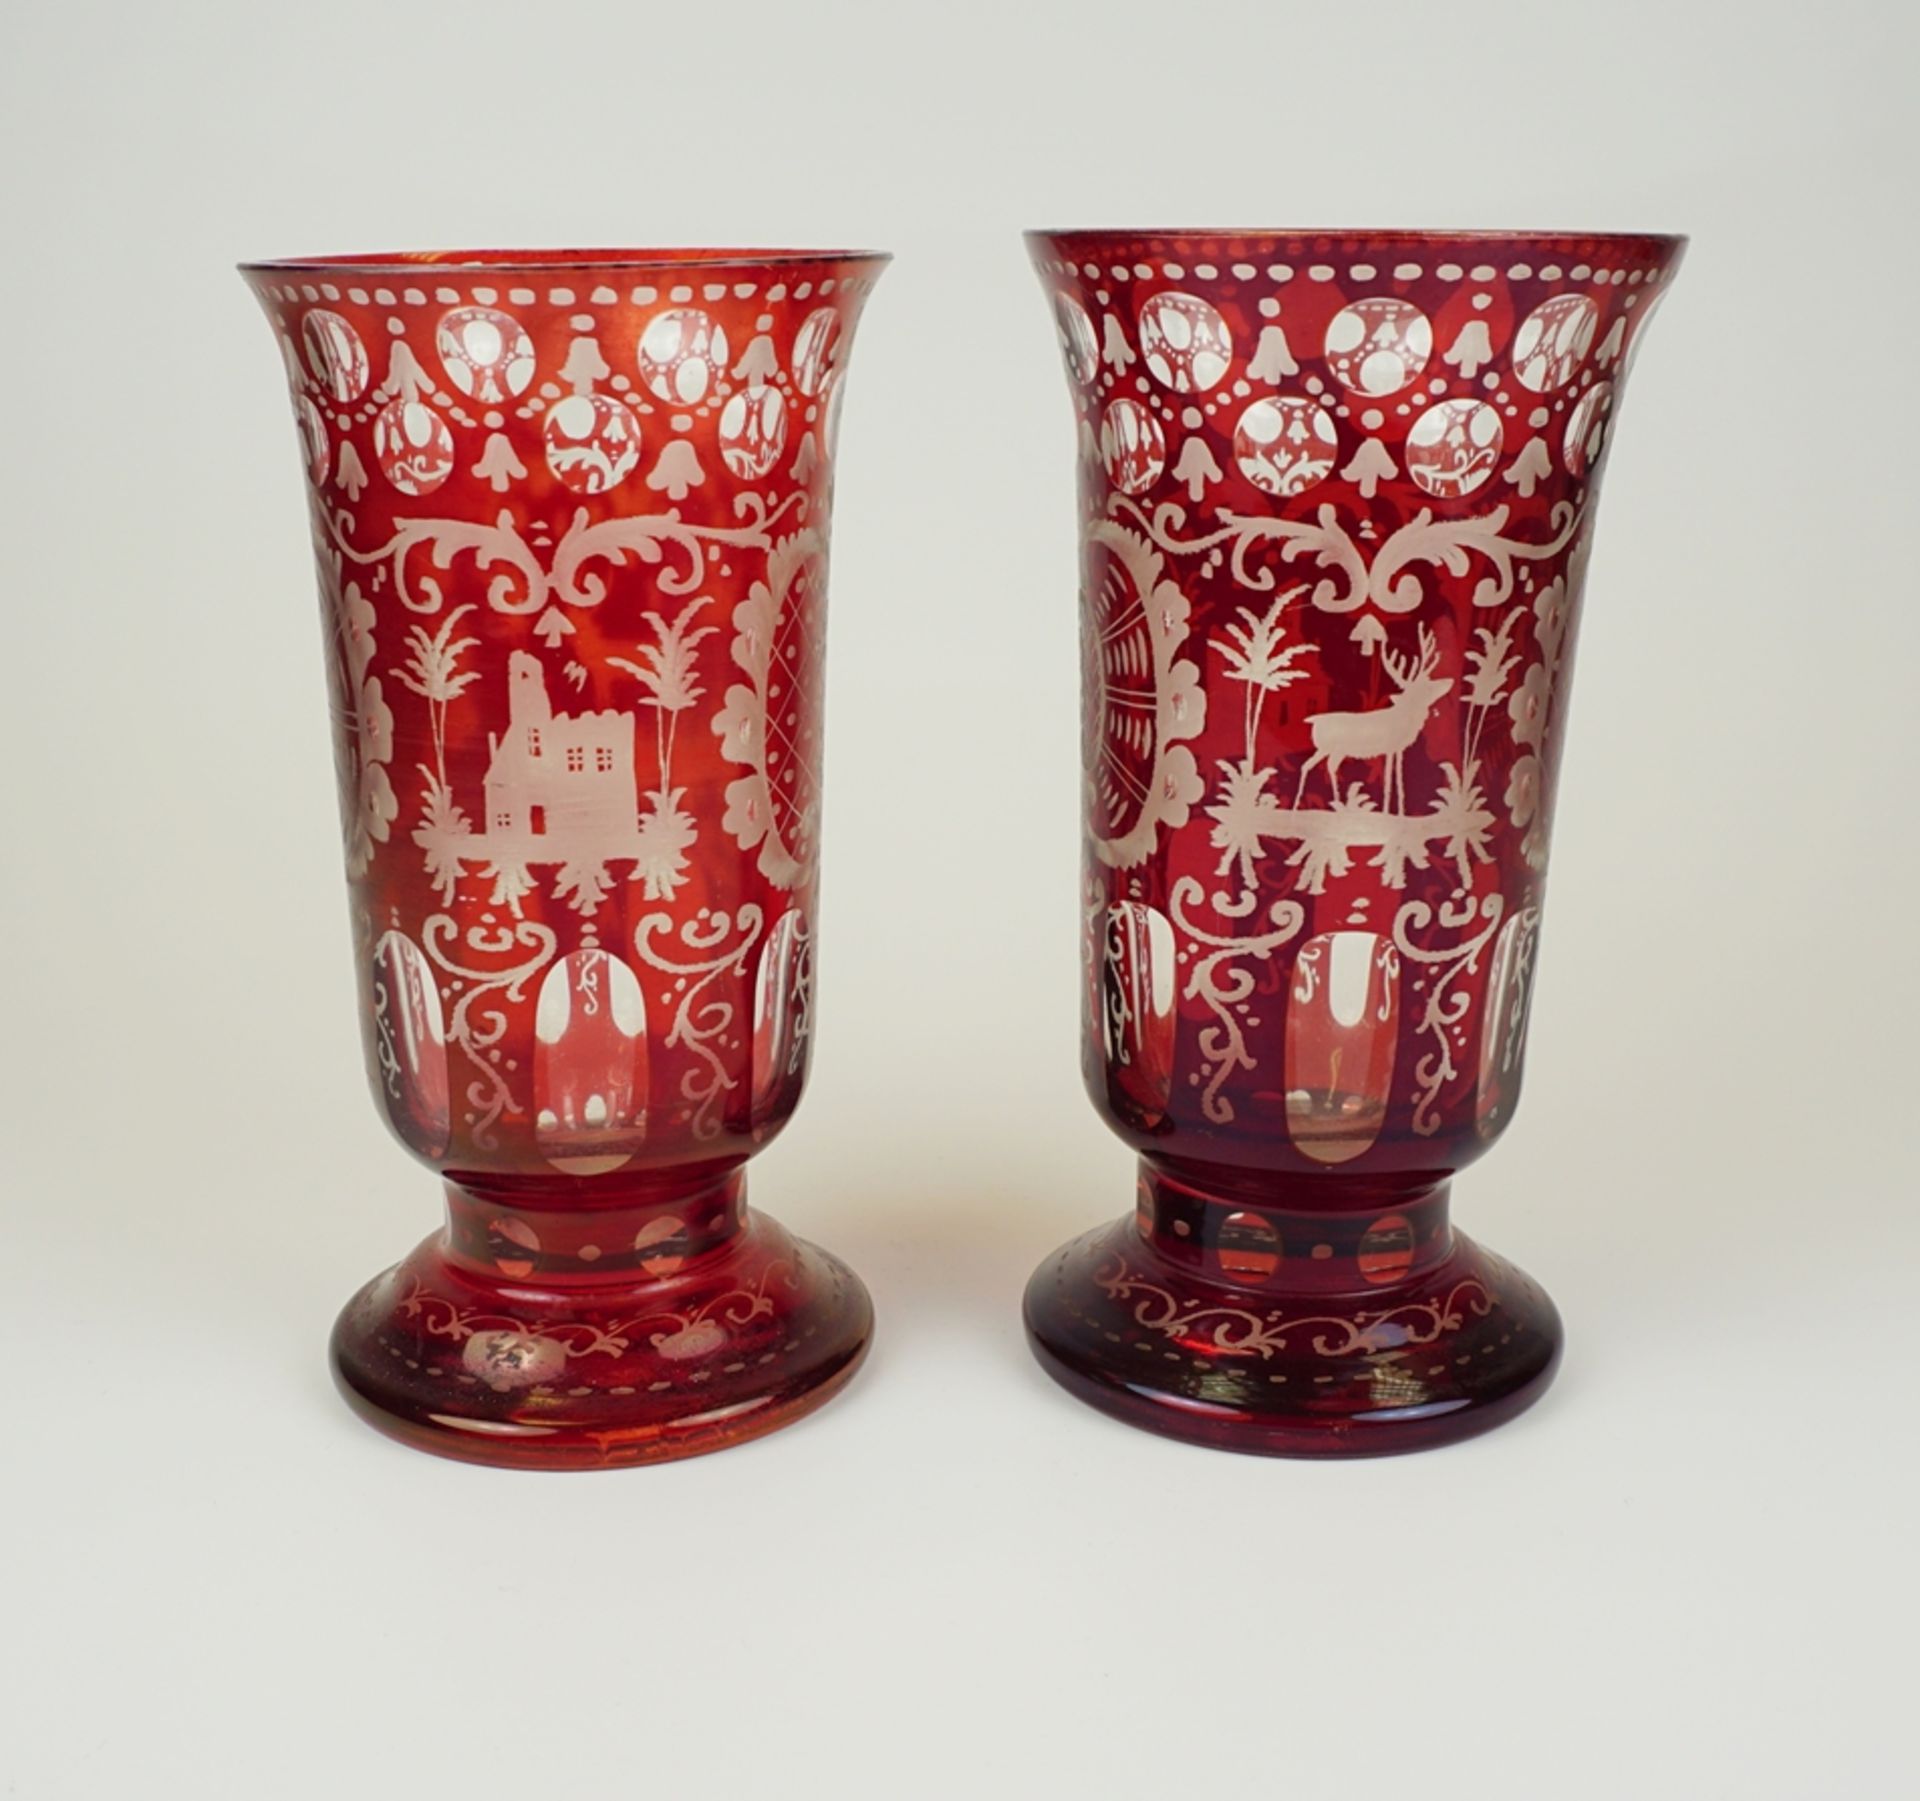 Paar Vasen, Friedrich Egermann in Haida, Böhmen, rubinrot gebeizt, um 1880